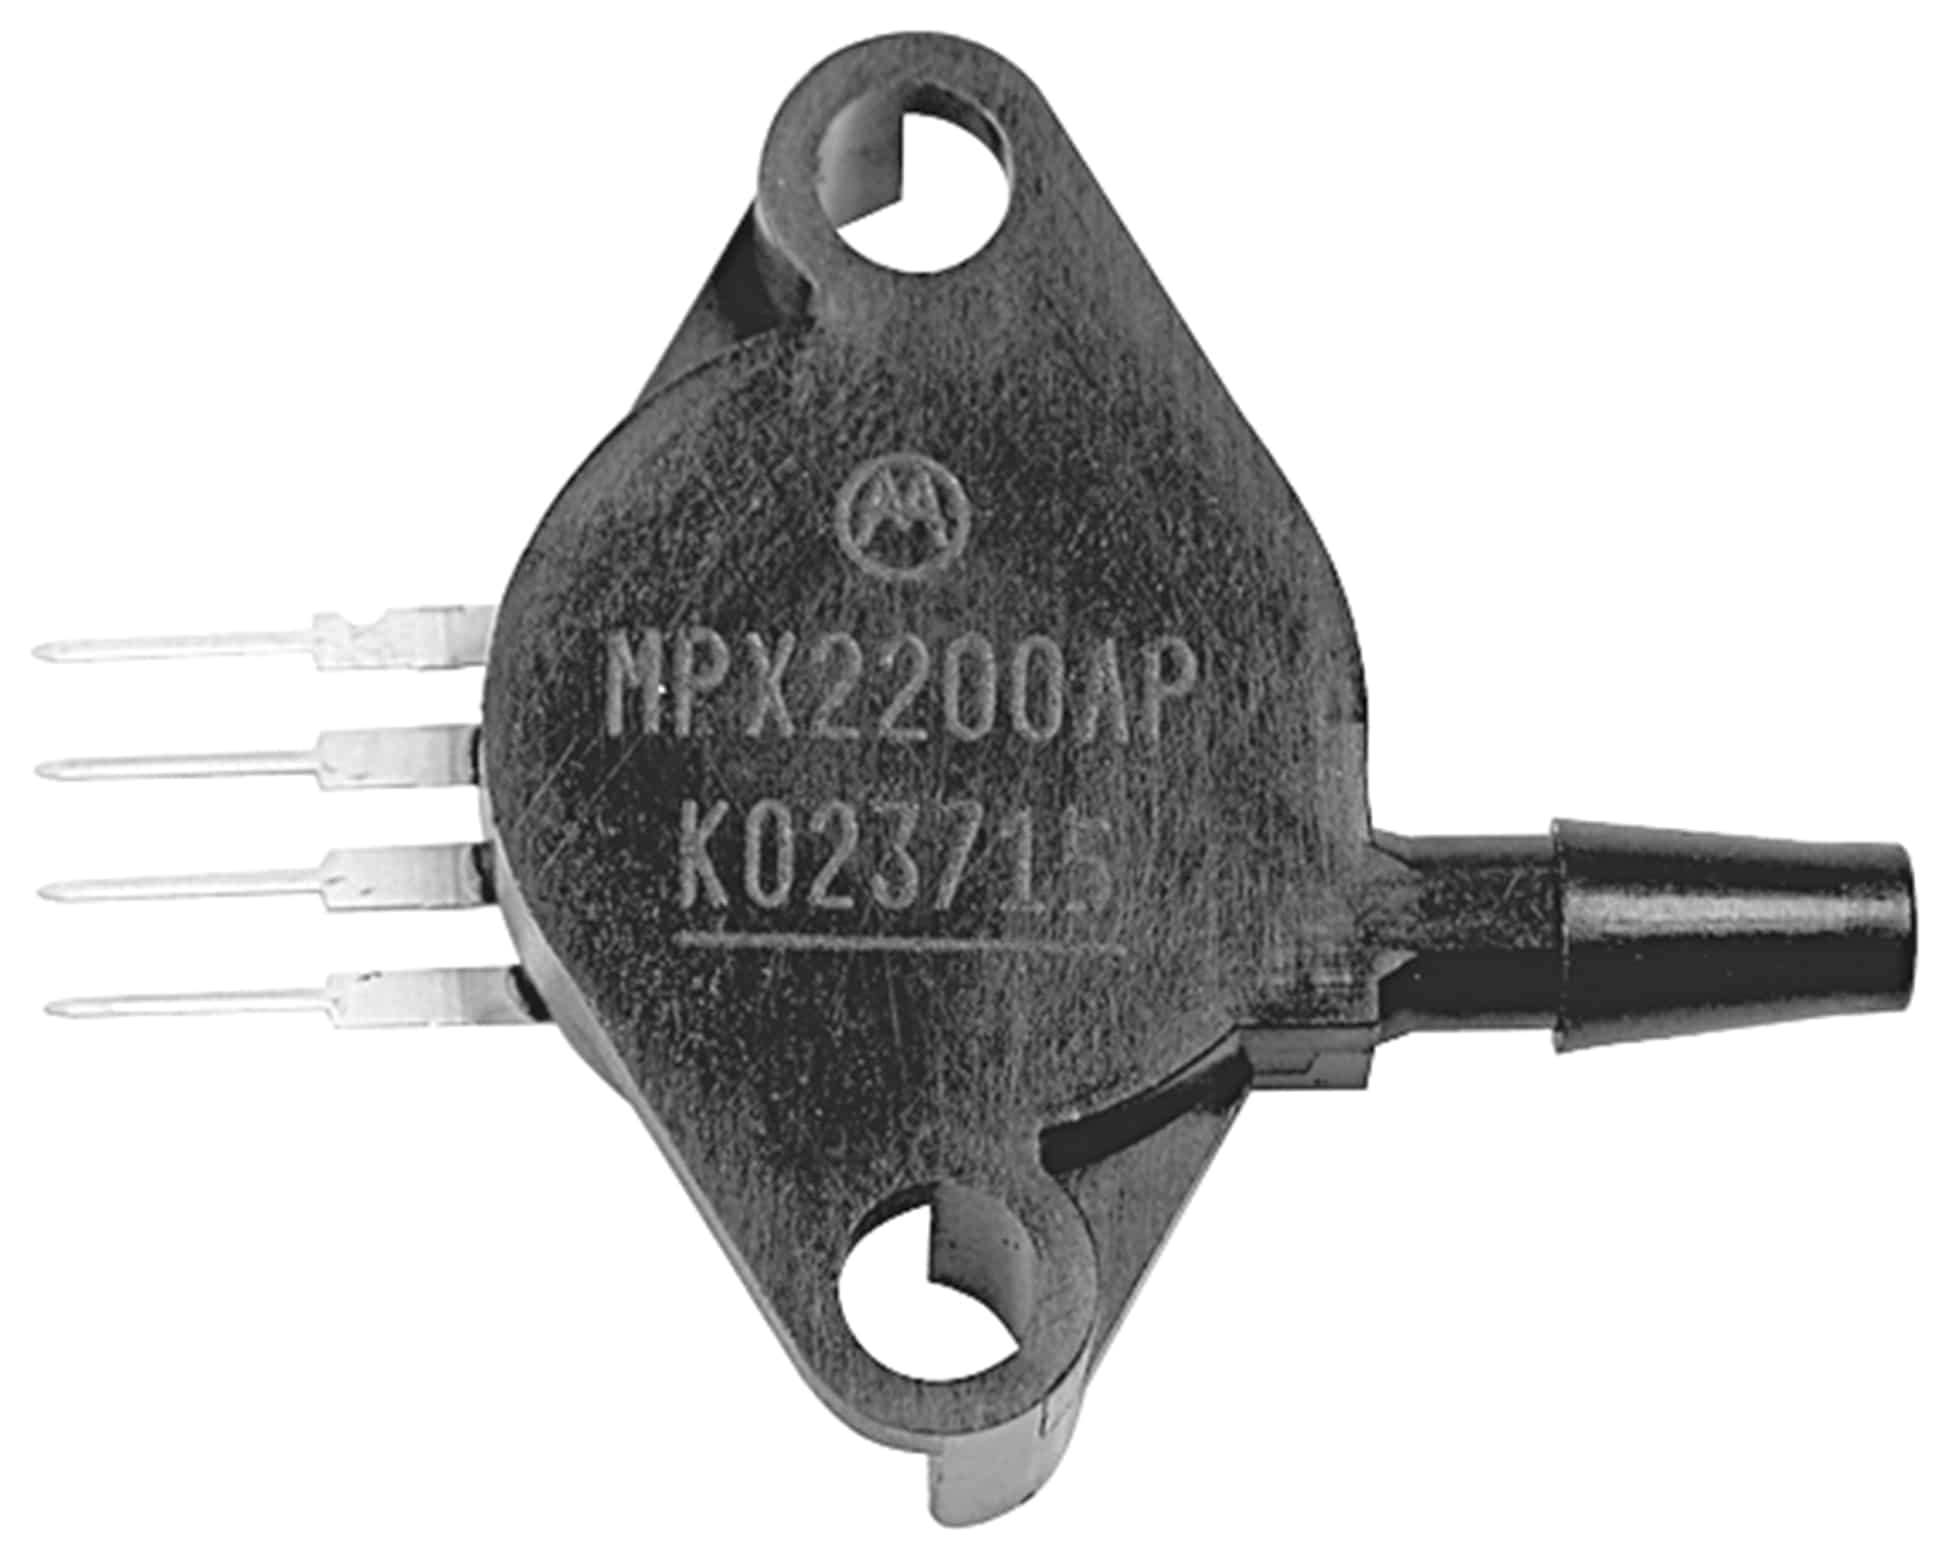 FREESCALE Drucksensor MP2010GP, 0 ... 10 kPa, 2,5 mV/kPa